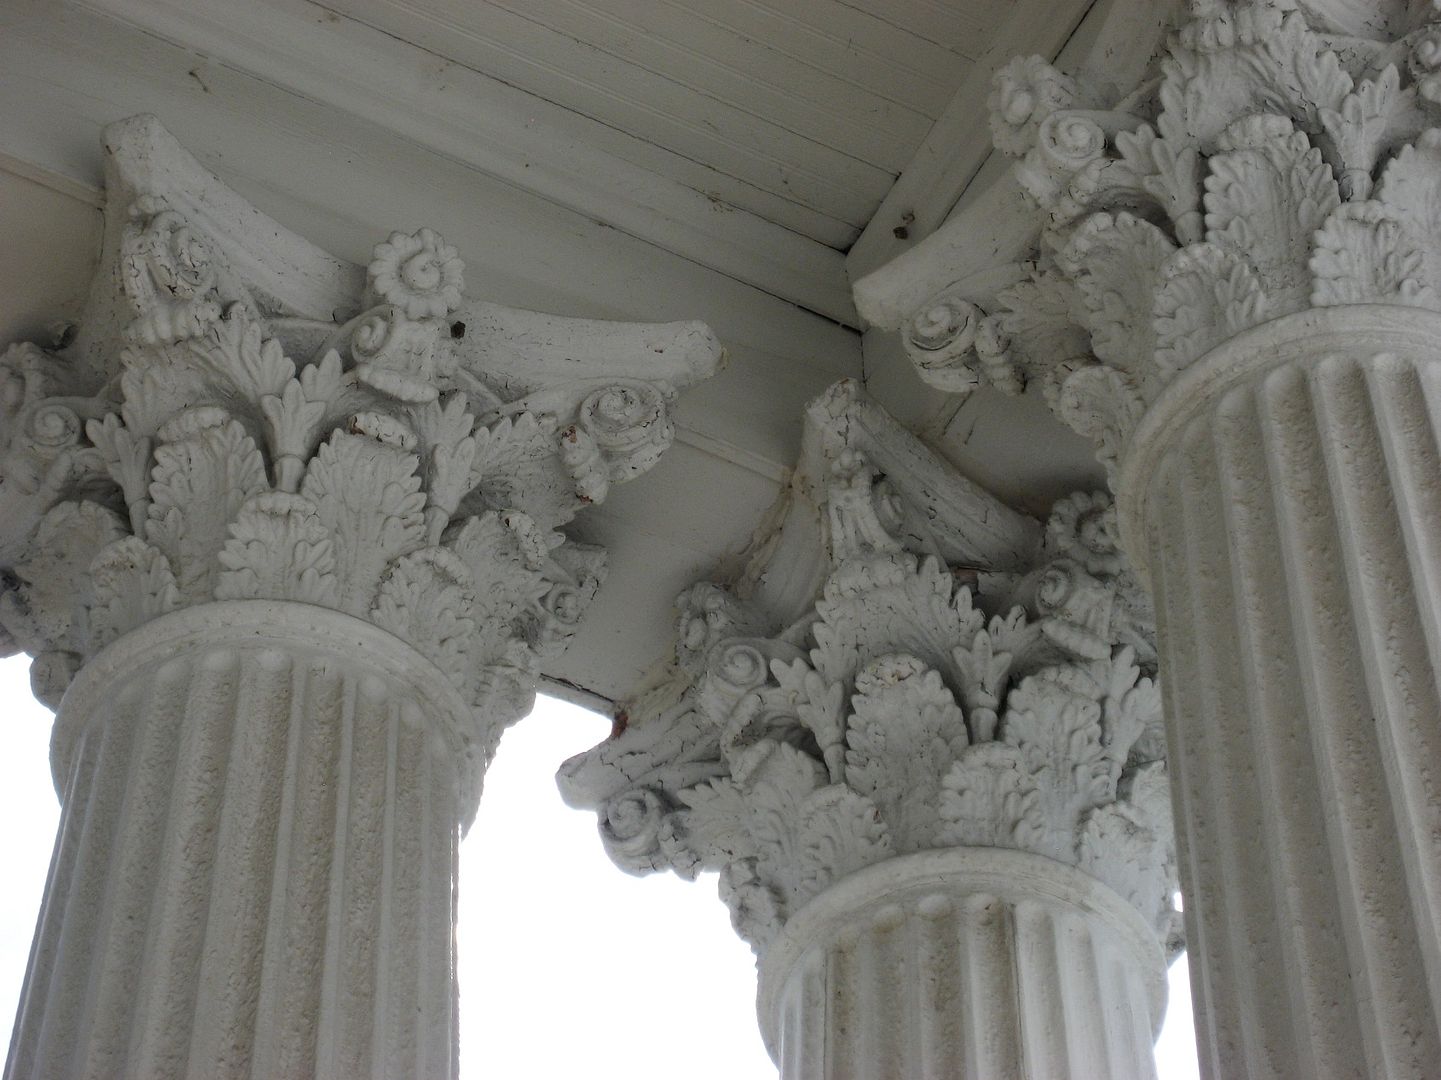 Magnolia columns